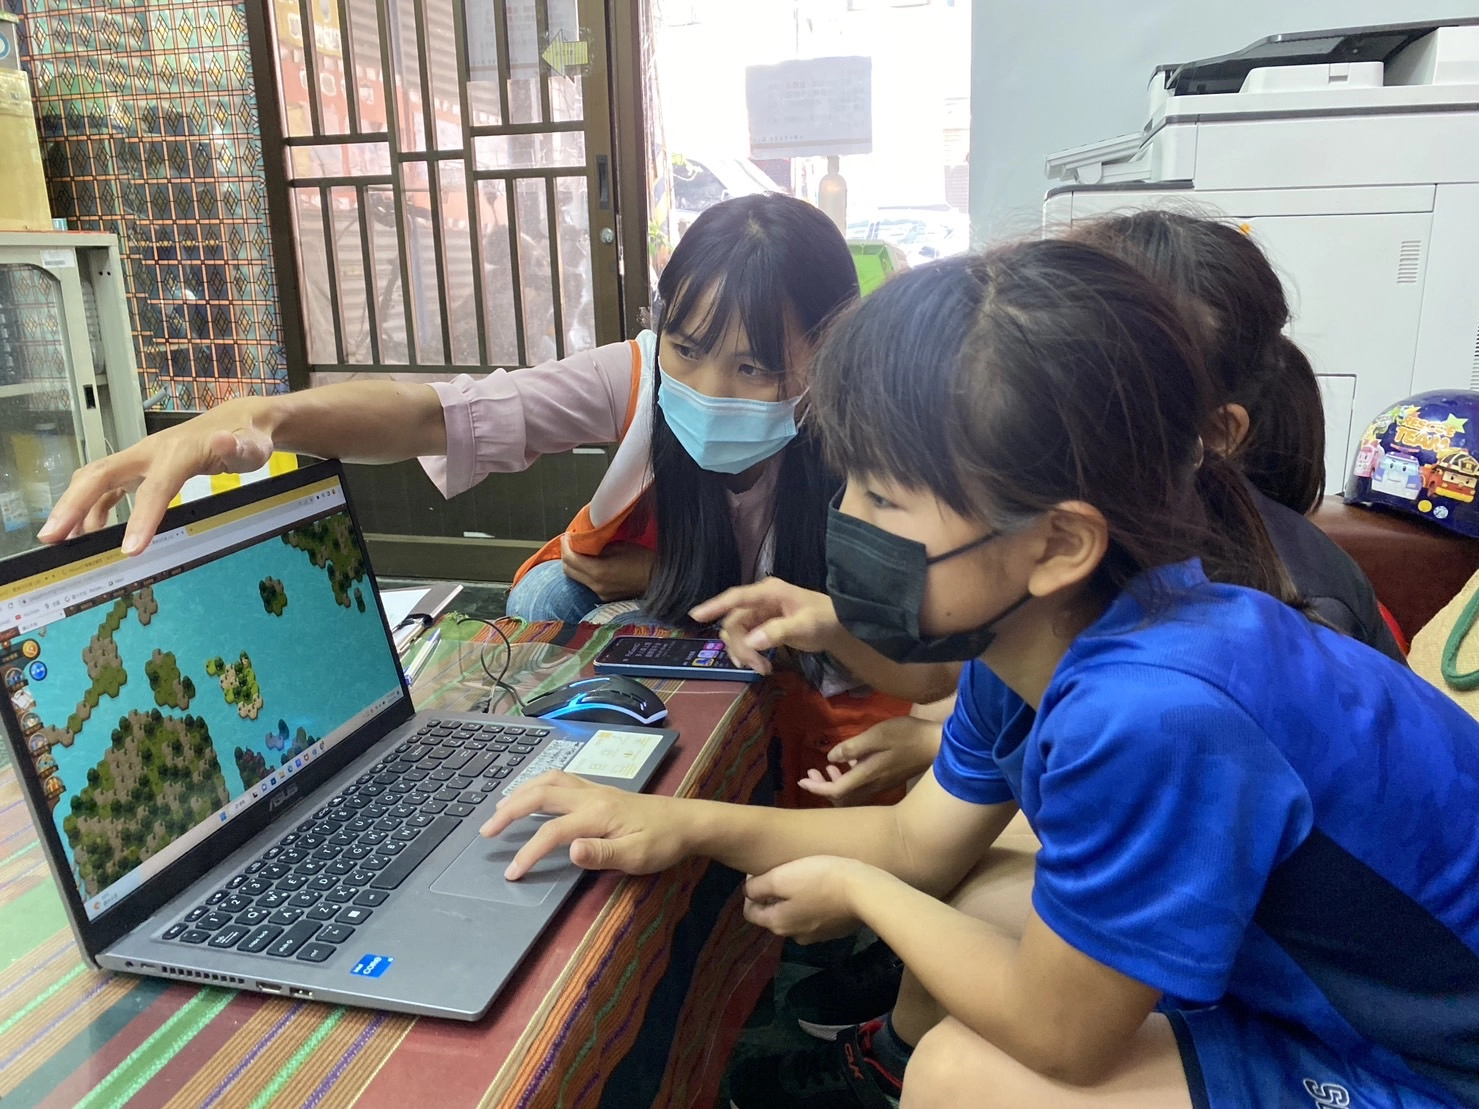 江慧珍社工陪伴孩子透過遊戲學習多元知識。